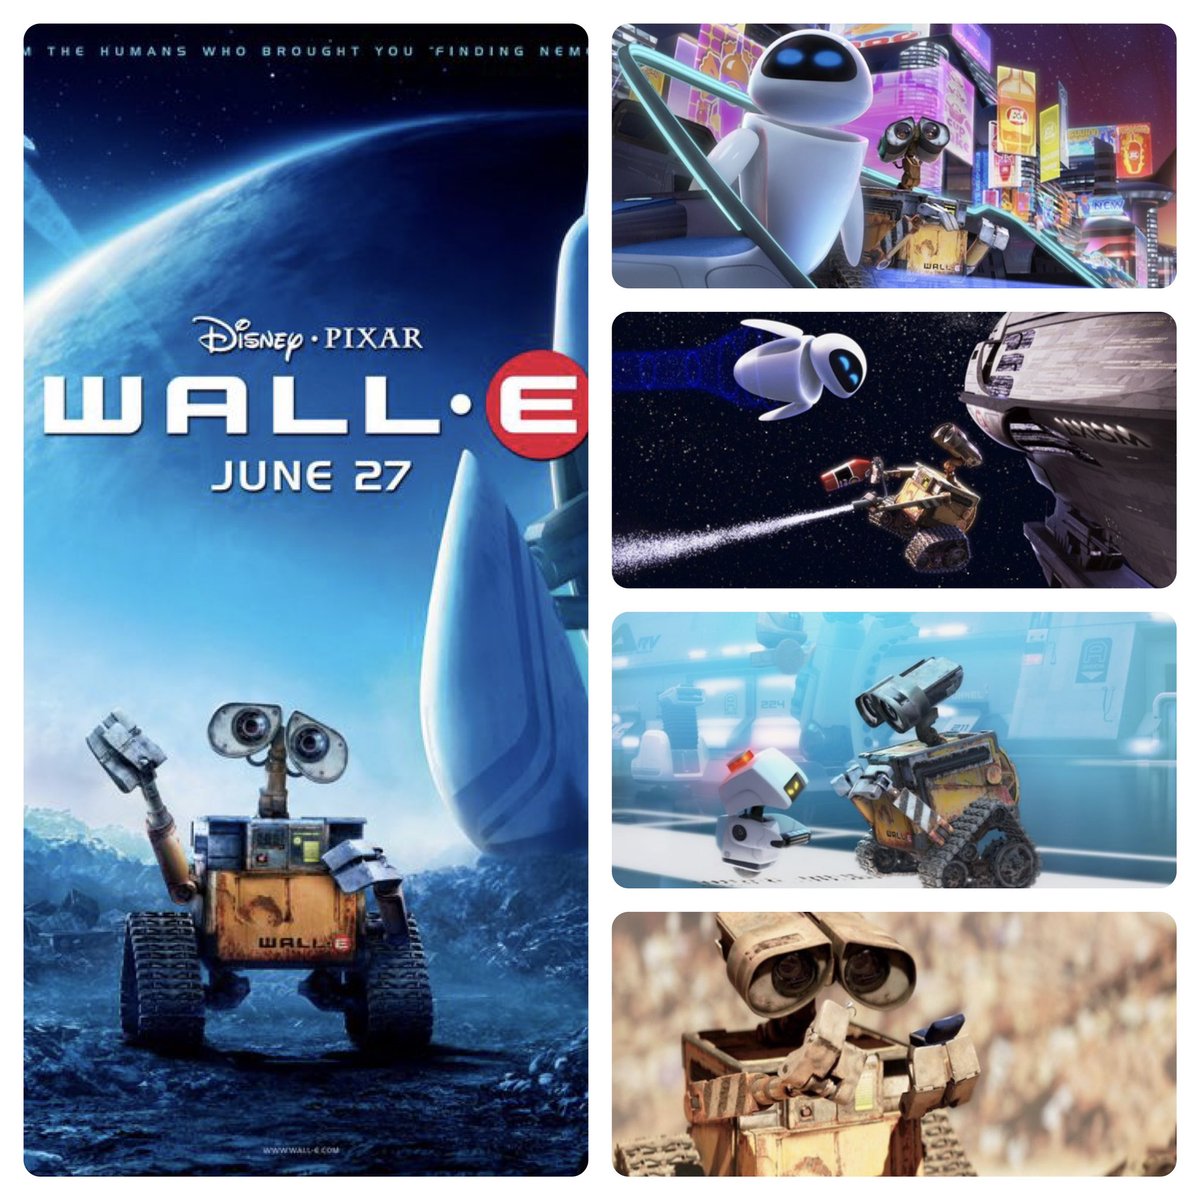 WALL•E celebrates it's 15th anniversary today
#walle #wallemovie #disneywalle #pixarwalle #disneypixarwalle #walleandeve #andrewstanton #pixar #pixaranimation #pixaranimationstudios #pixarfan #disneypixar #pixarmovie #pixarfilms #pixarstudios #pixardisney #disney #disneymovies